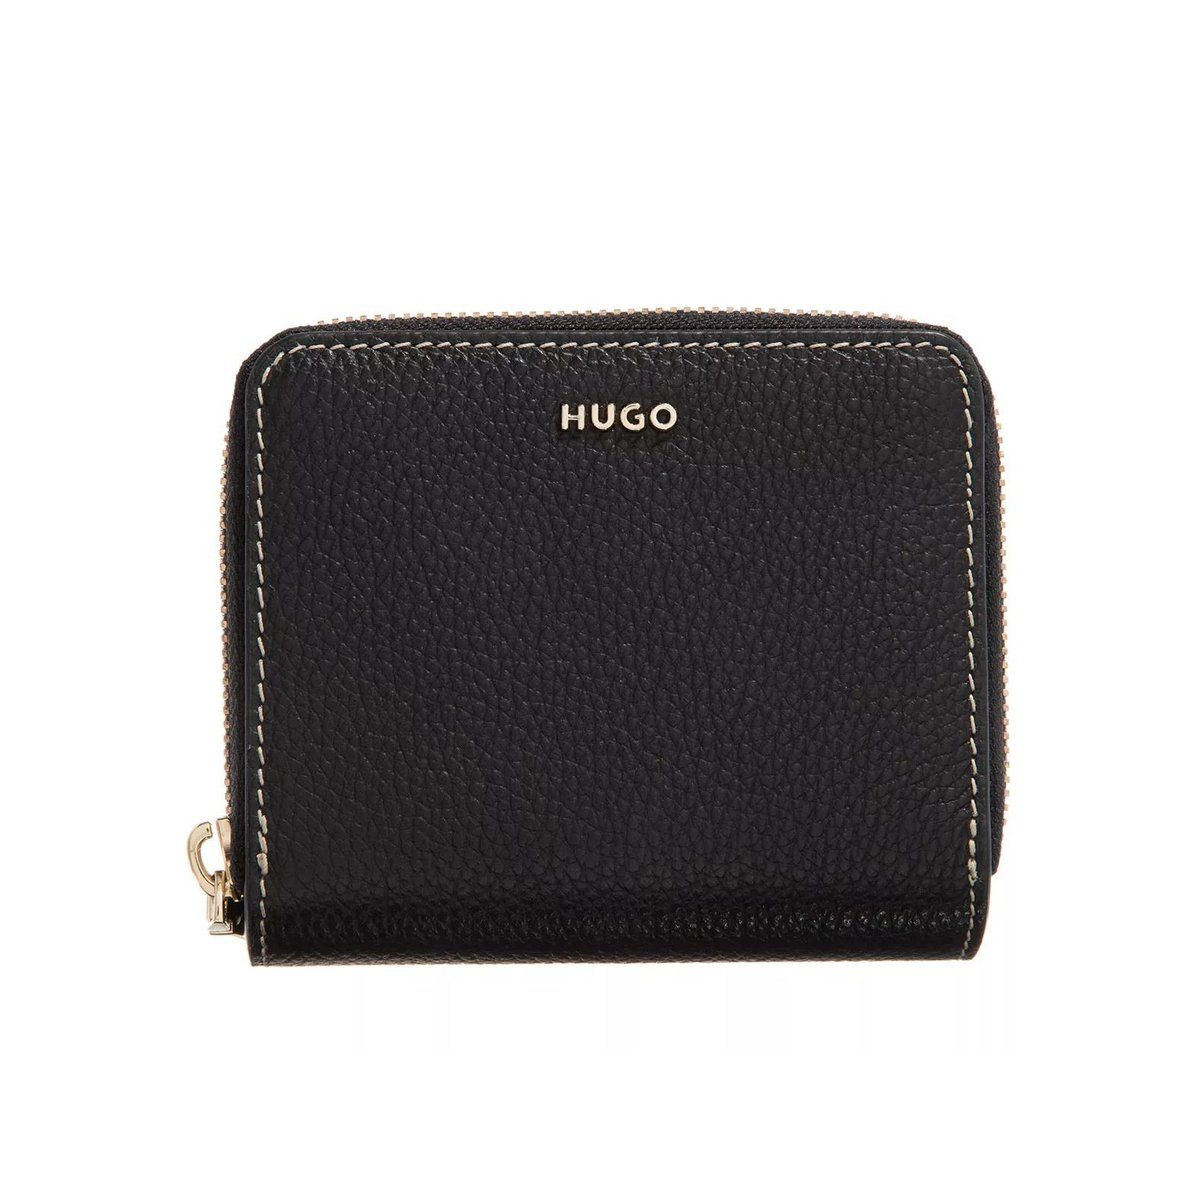 Hugo Boss Damen Geldbörsen online kaufen | OTTO